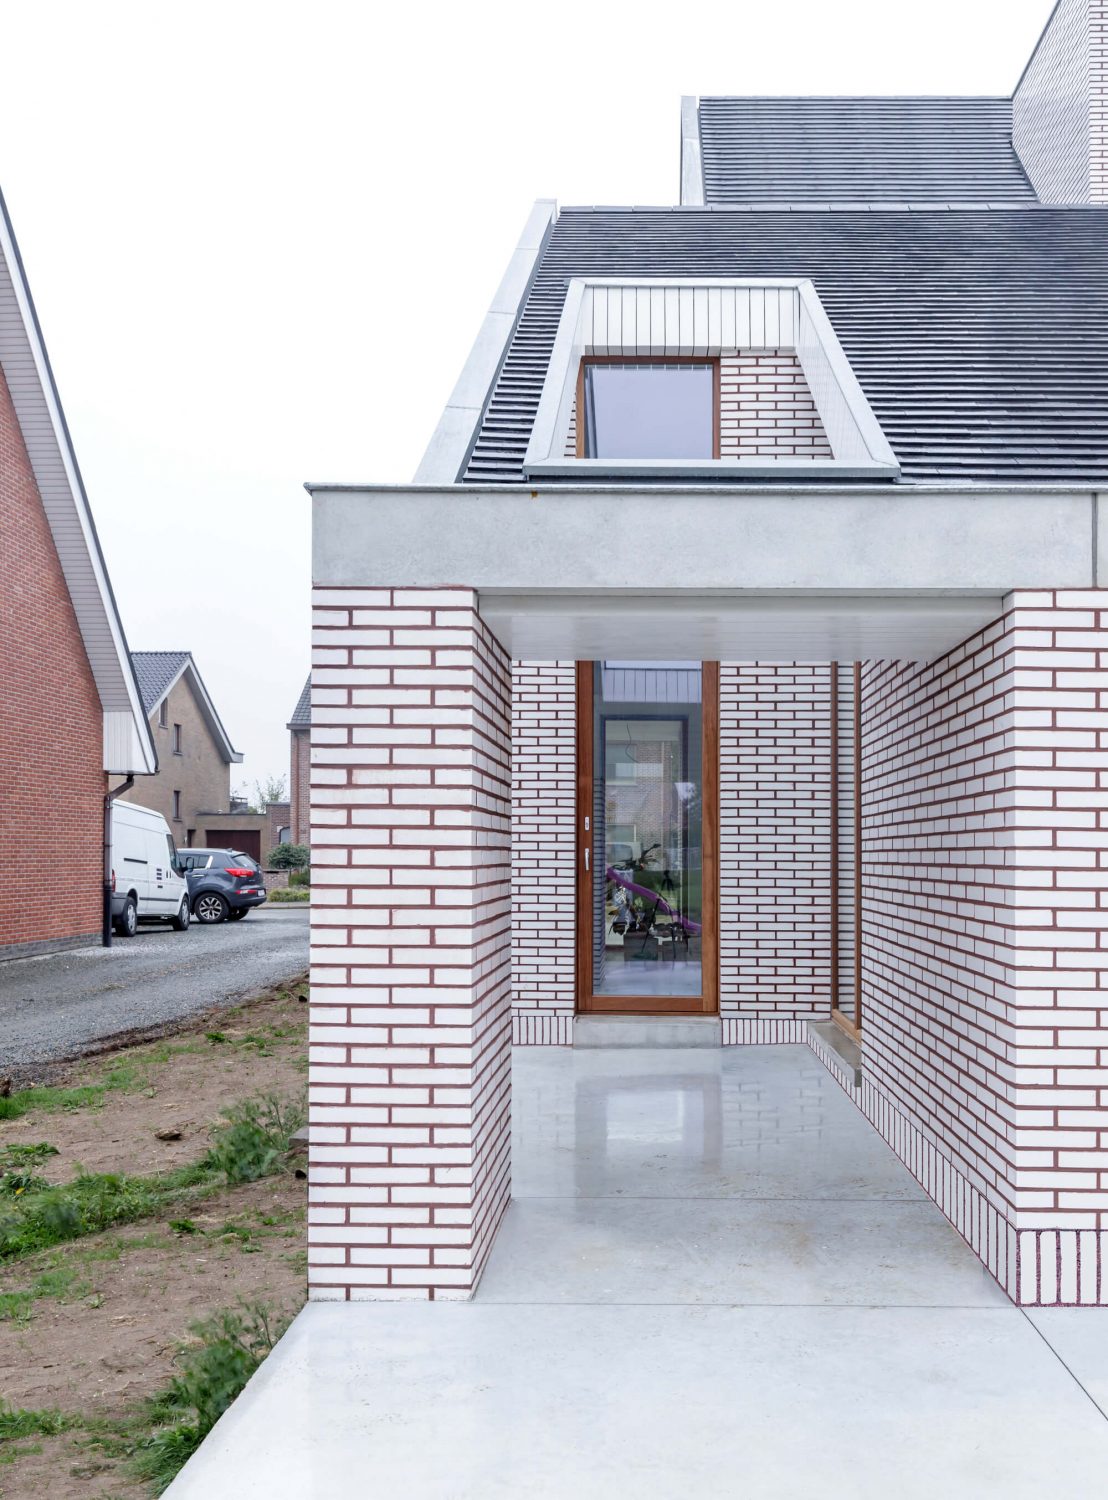 Vinken House by Poot architectuur